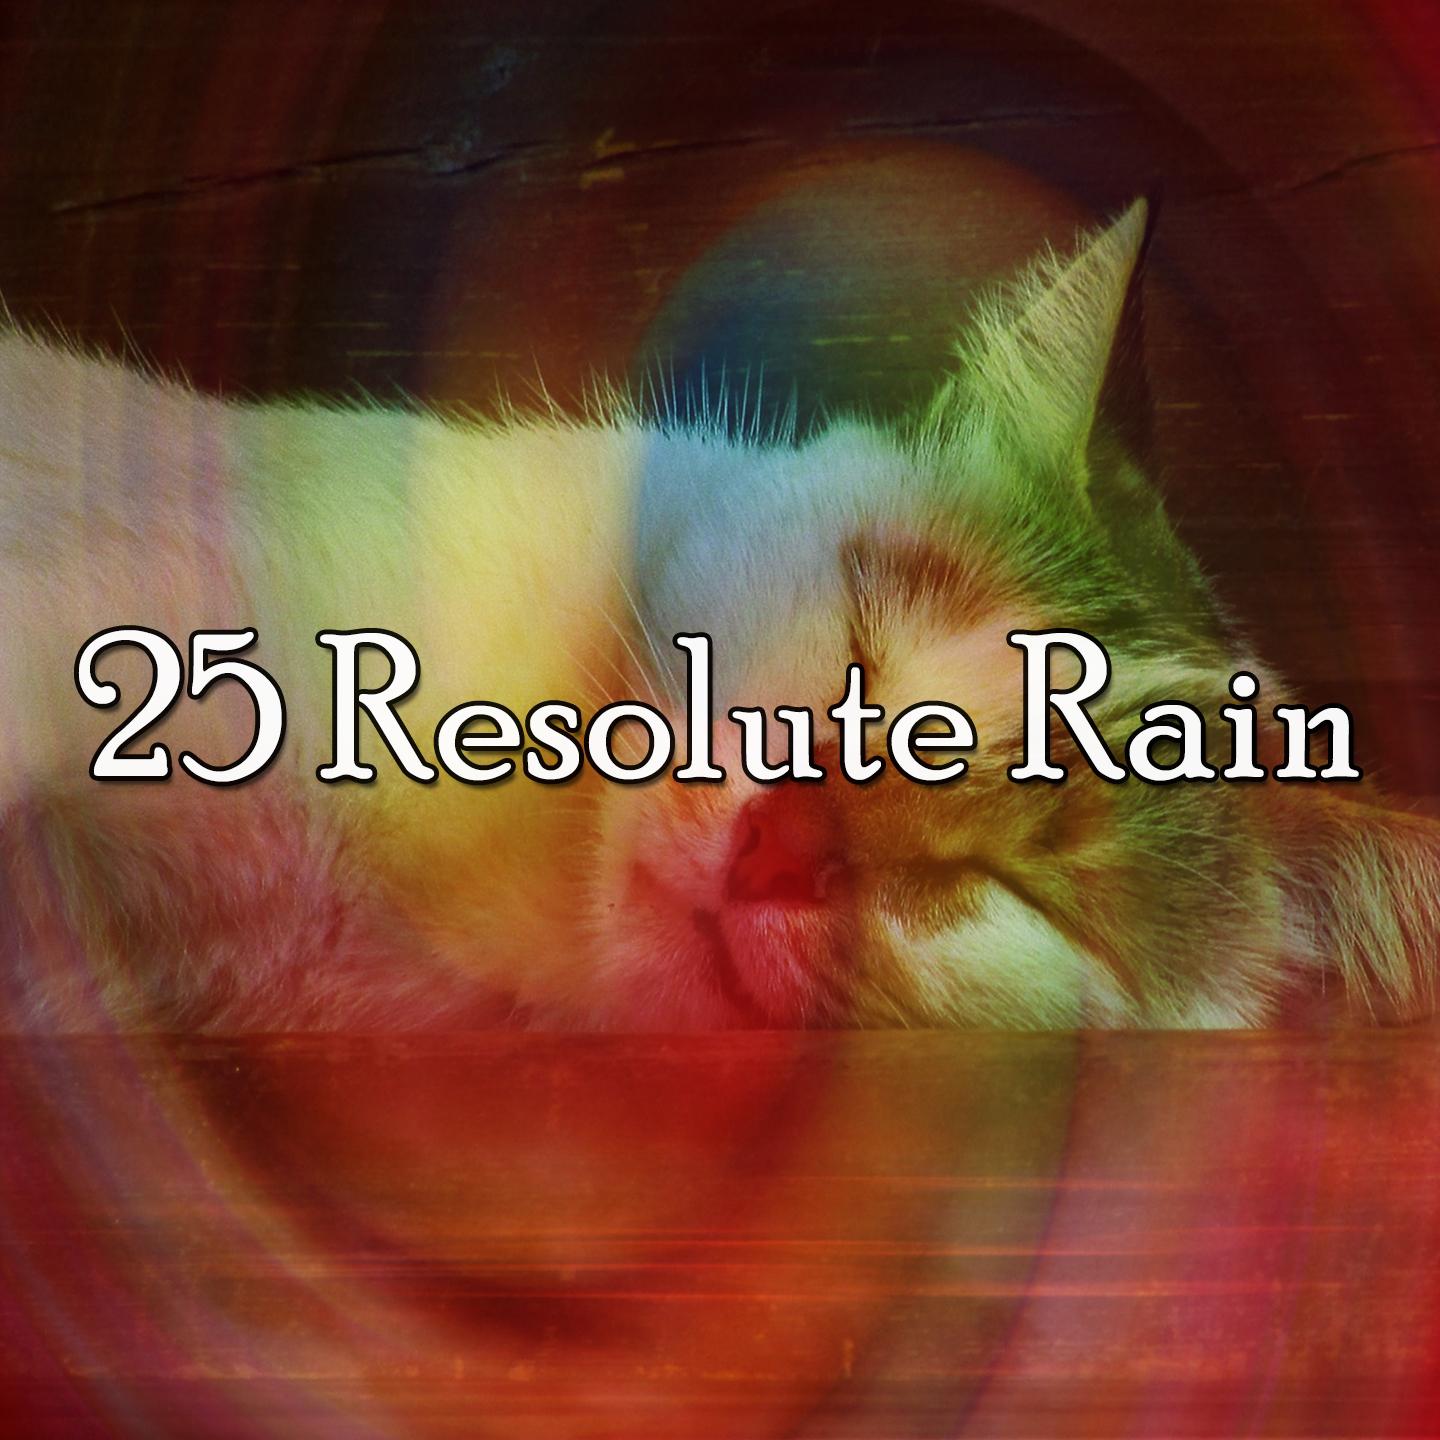 25 Resolute Rain